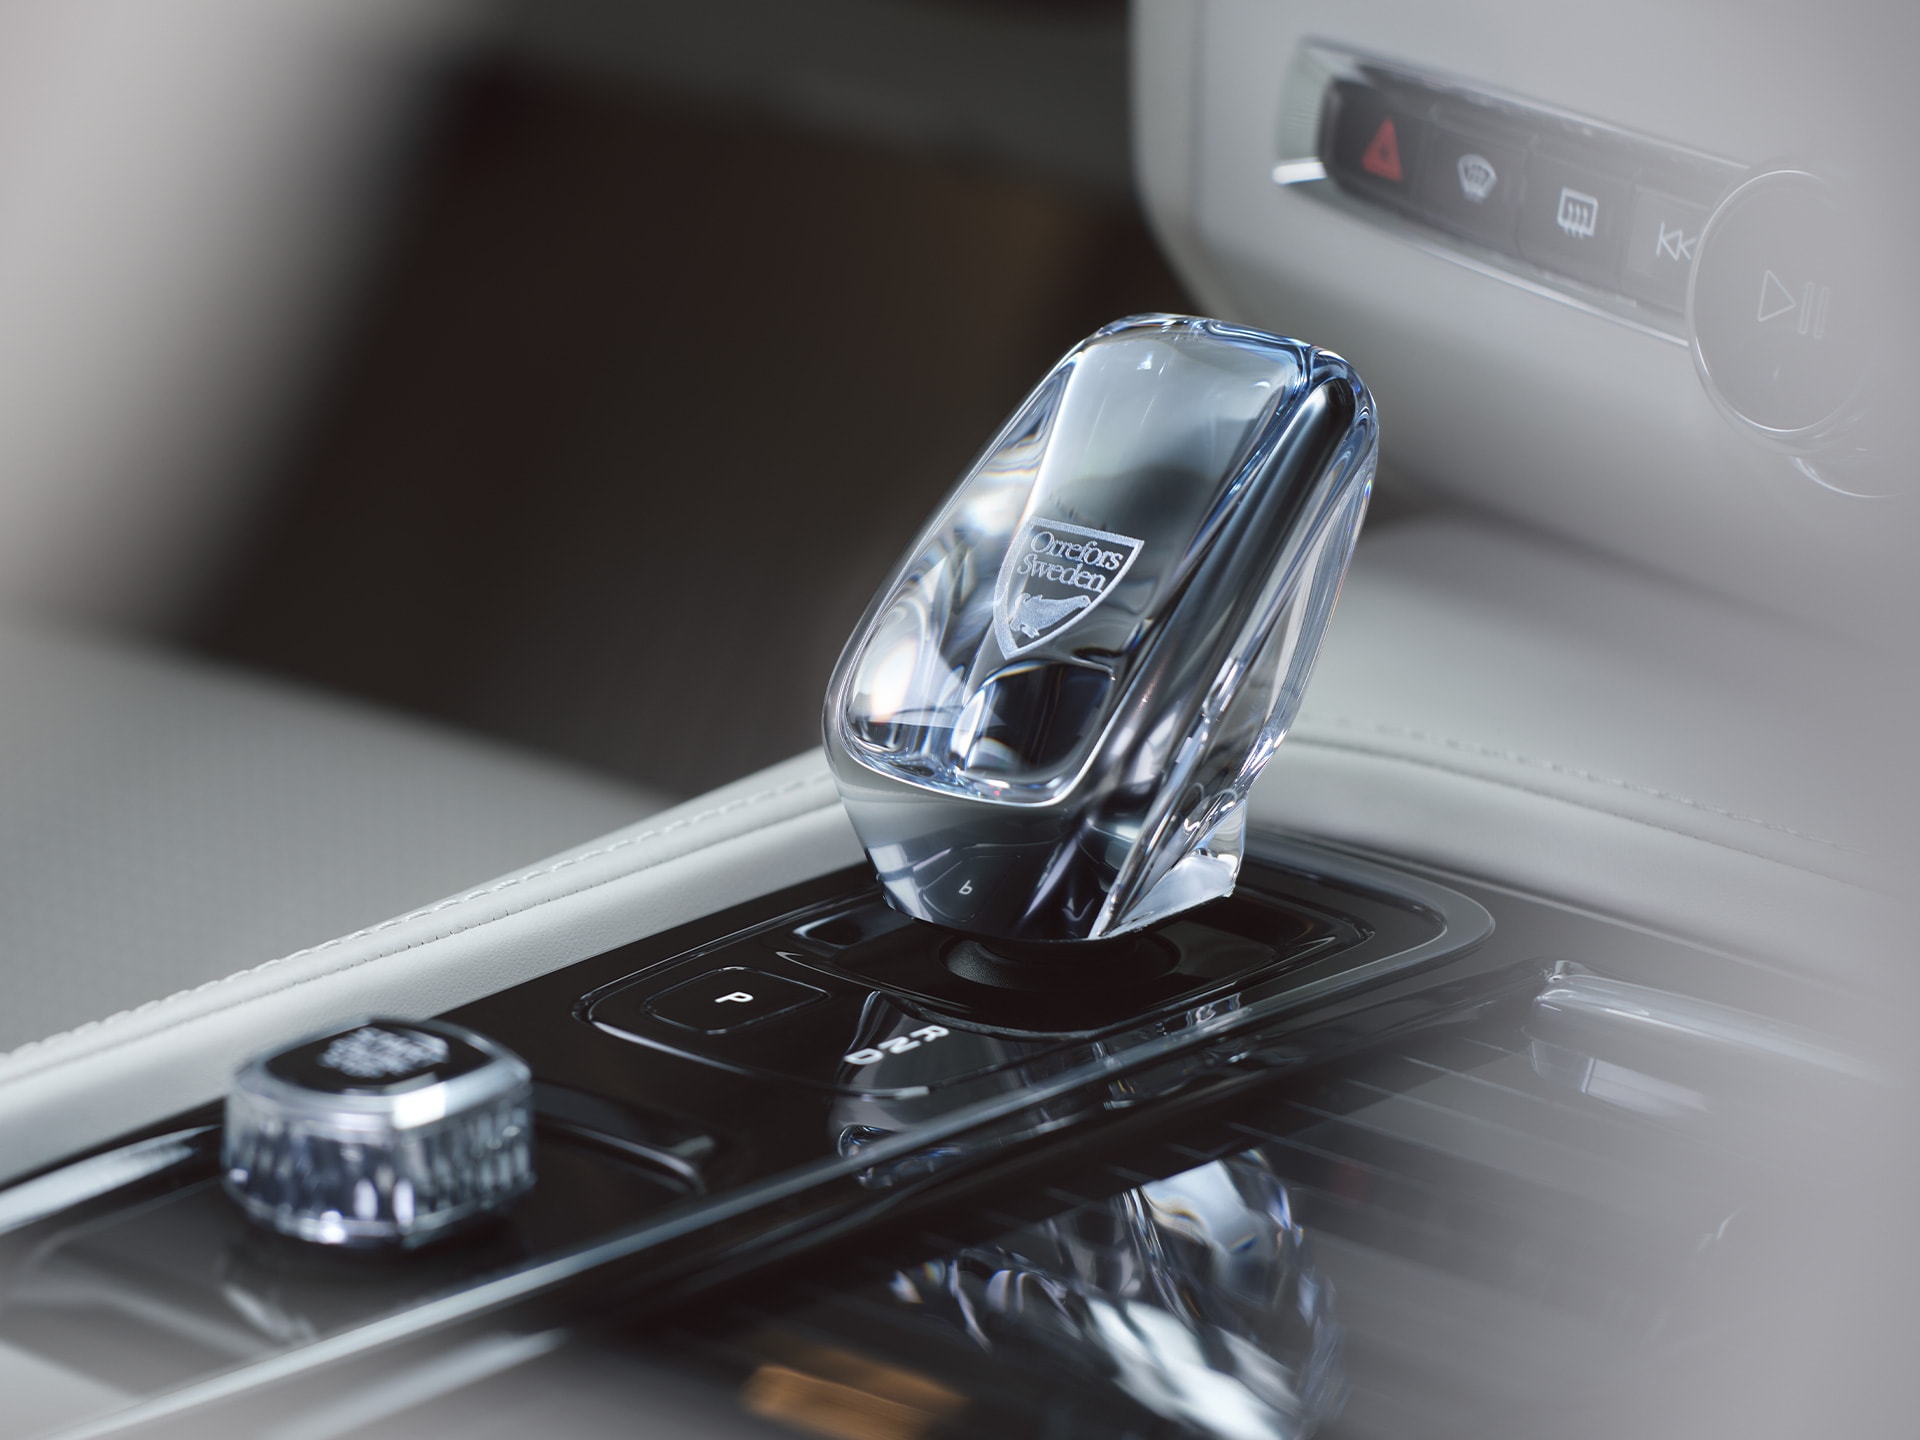 Kristalna ručica mjenjača u limuzini Volvo S90 od pravog švedskog kristala koju su napravili u kompaniji Orrefors.